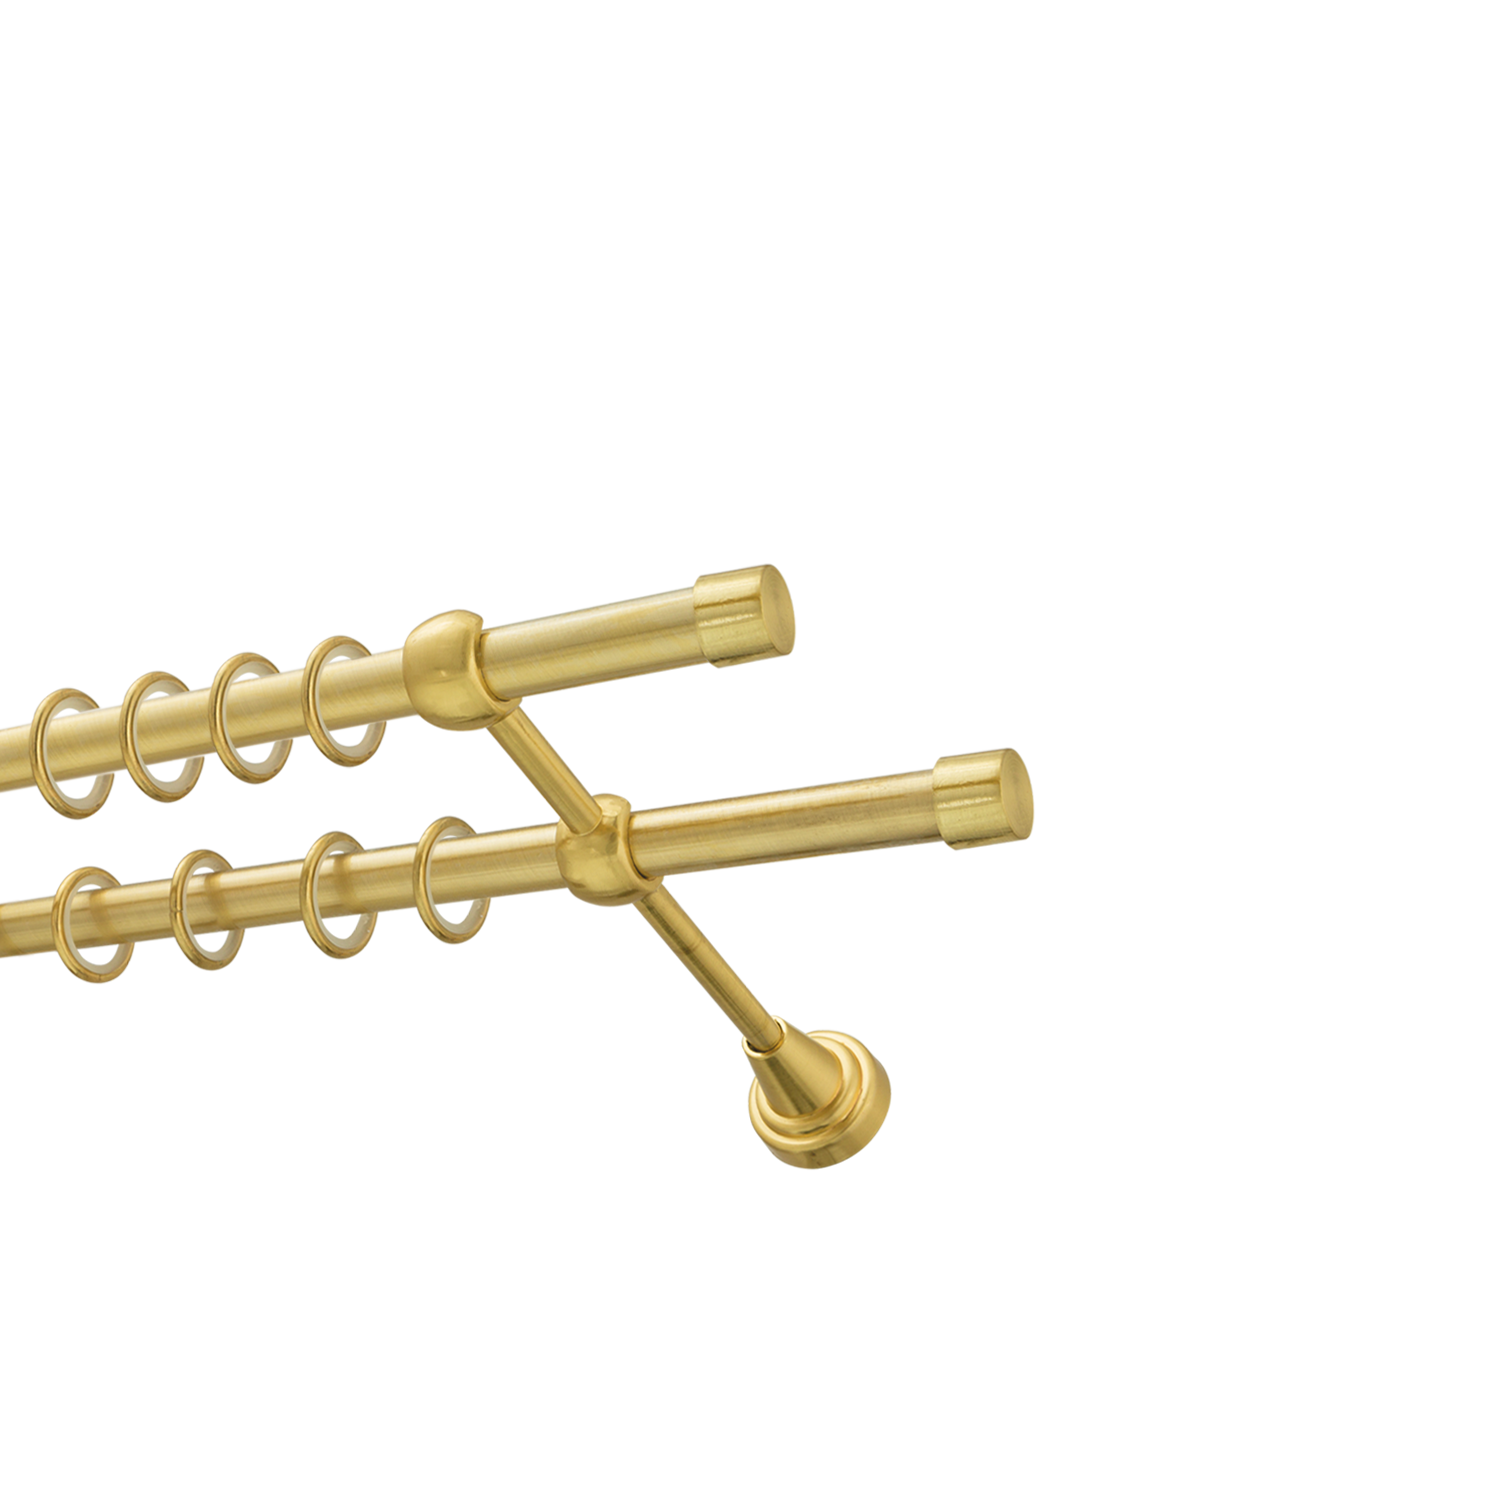 Металлический карниз для штор Заглушка, двухрядный 16/16 мм, золото, гладкая штанга, длина 160 см - фото Wikidecor.ru